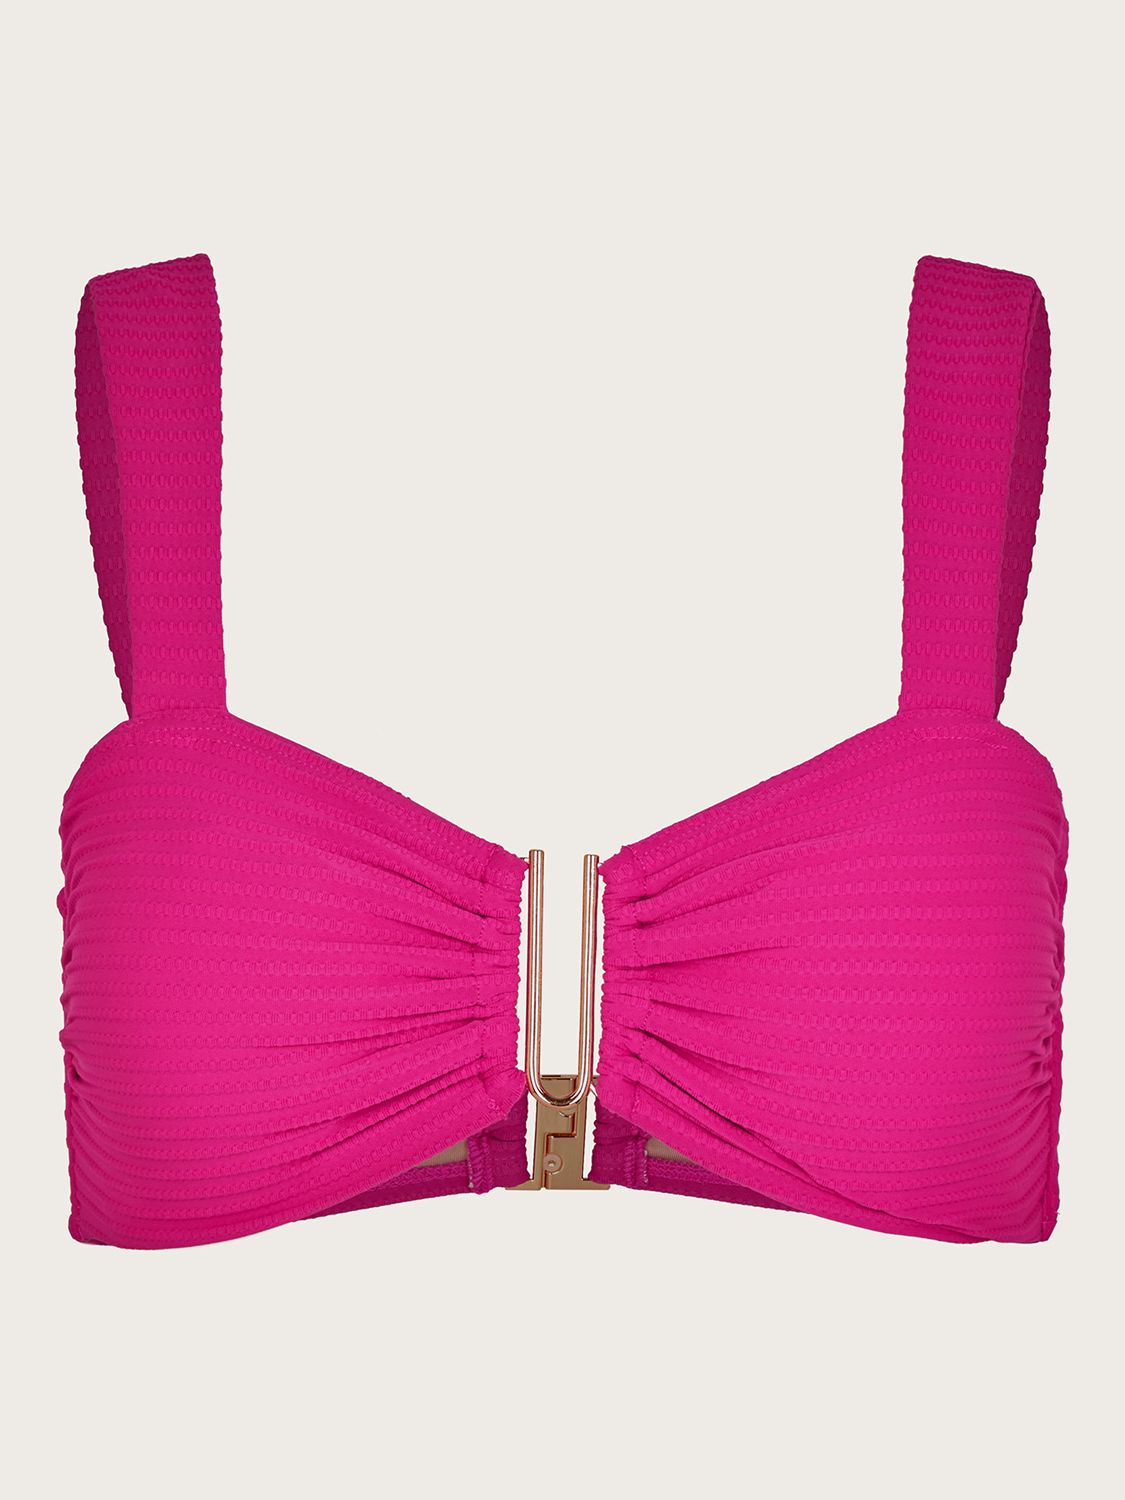 Monsoon Maria Bikini Top, Pink, 8